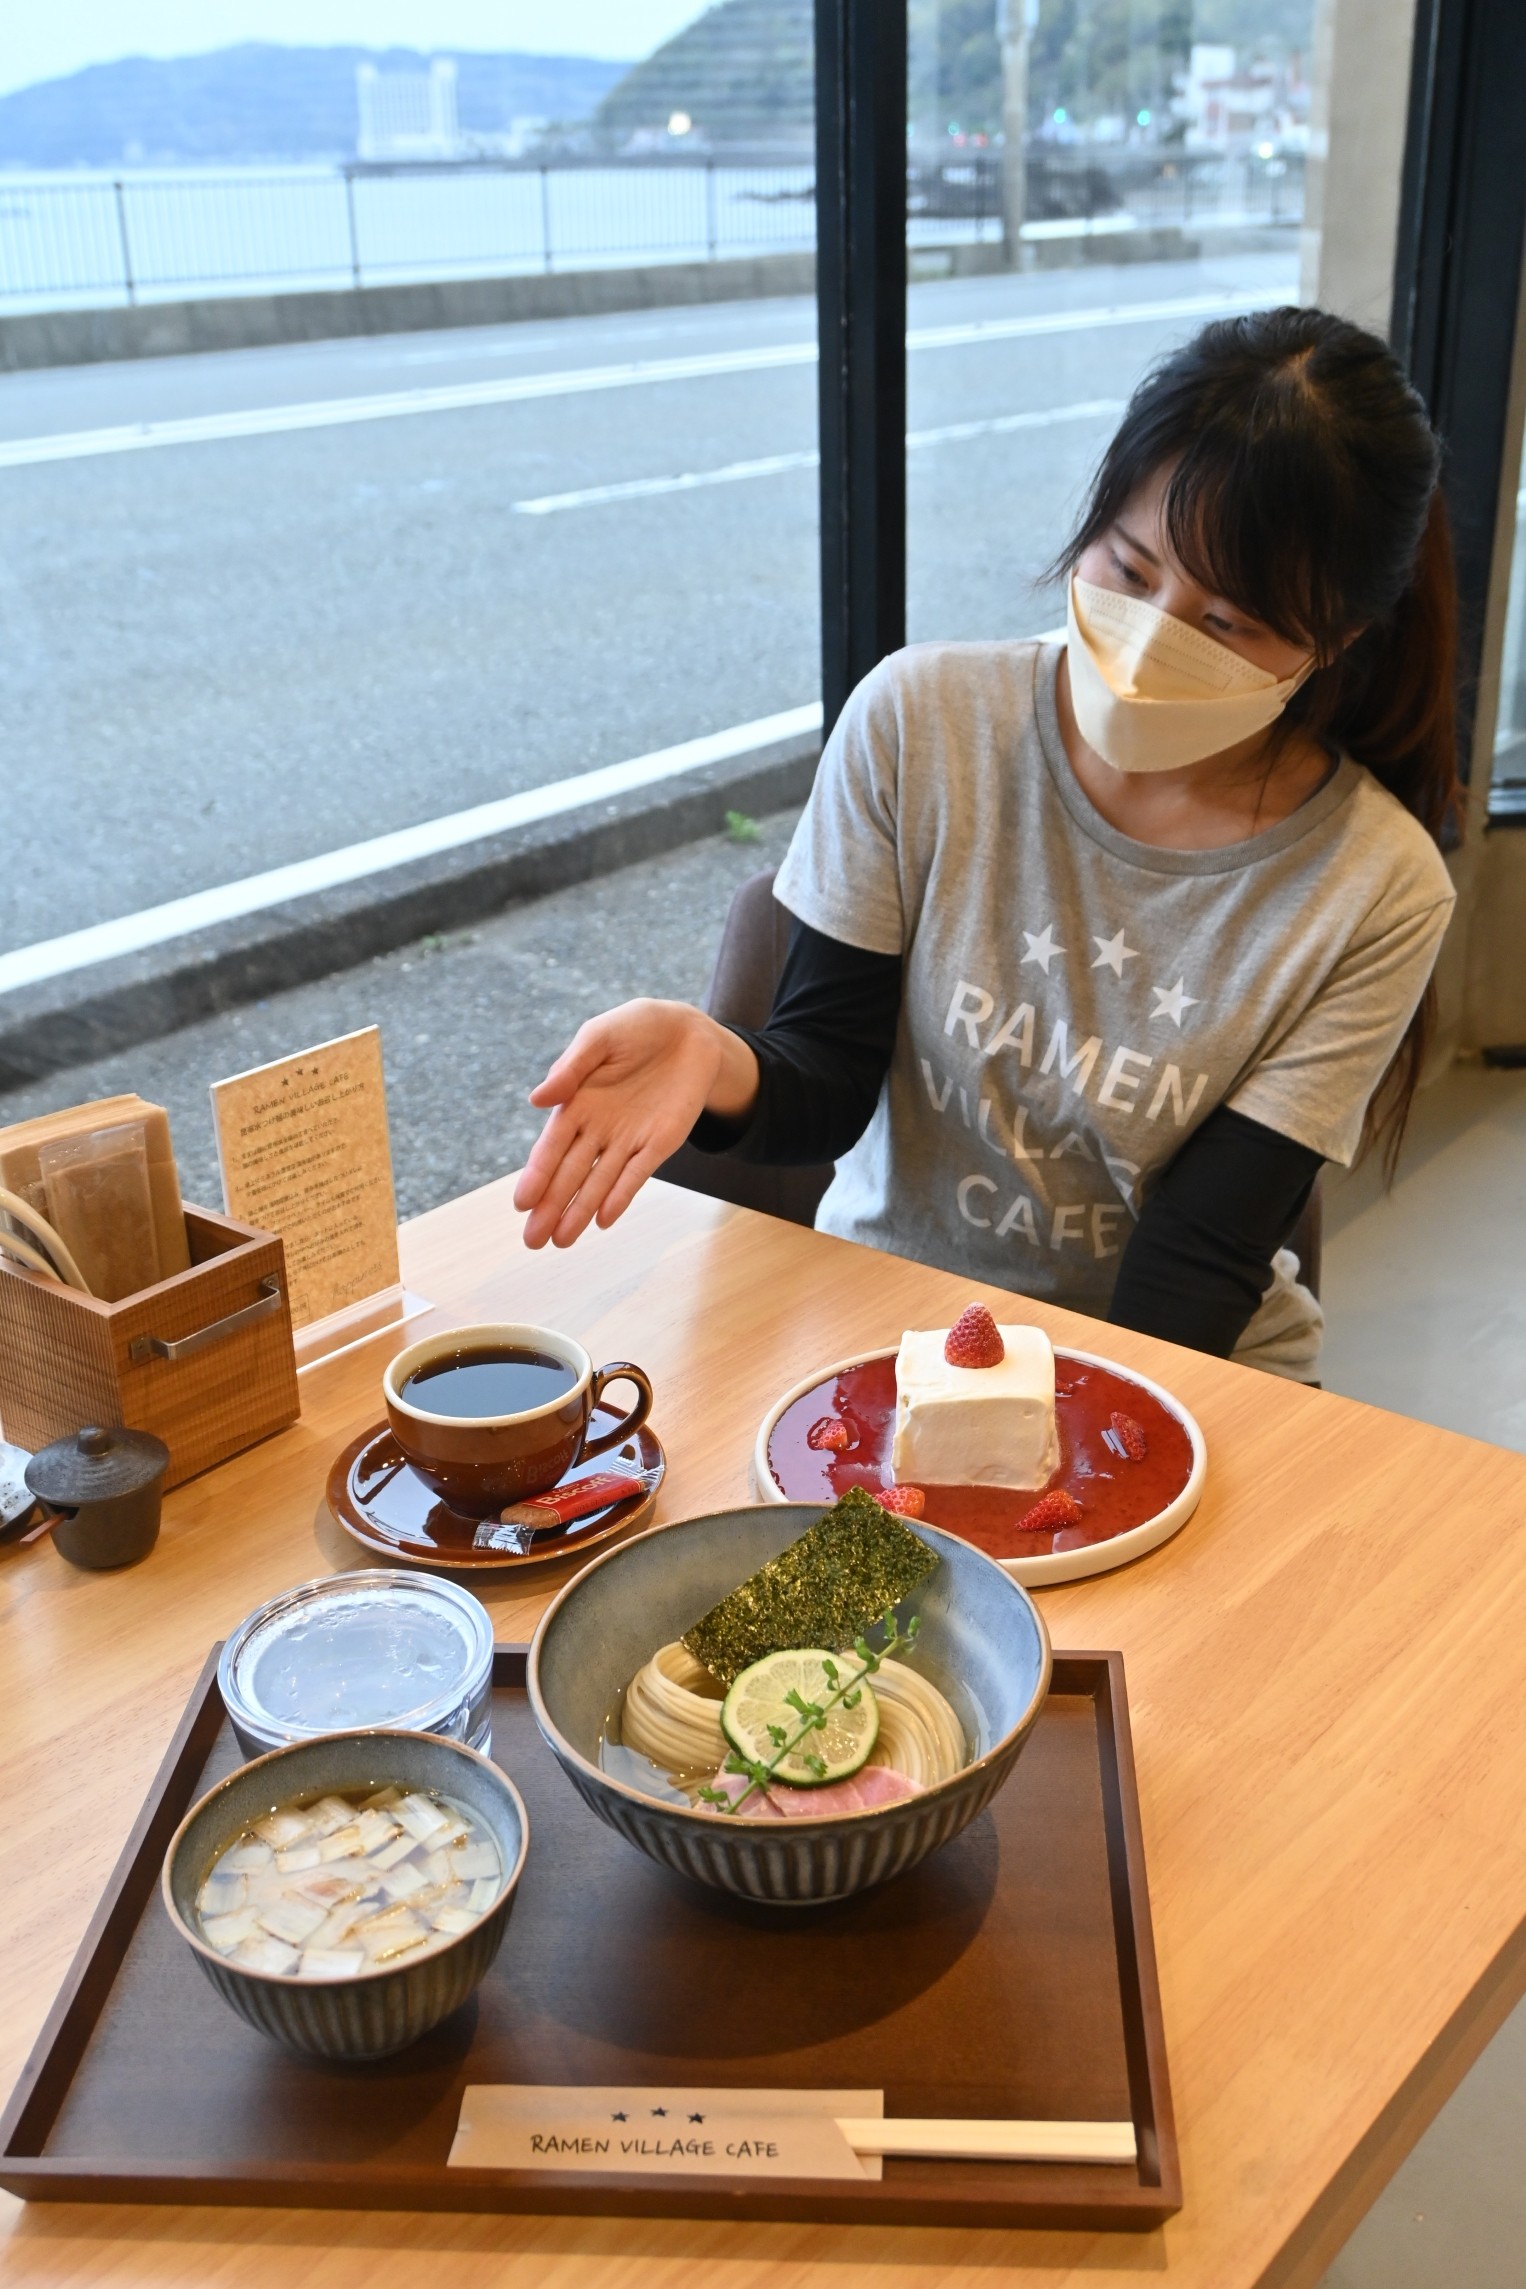 一押しのつけ麺やカフェメニューを紹介する福田さん＝伊東市宇佐美のラーメンビレッジカフェ